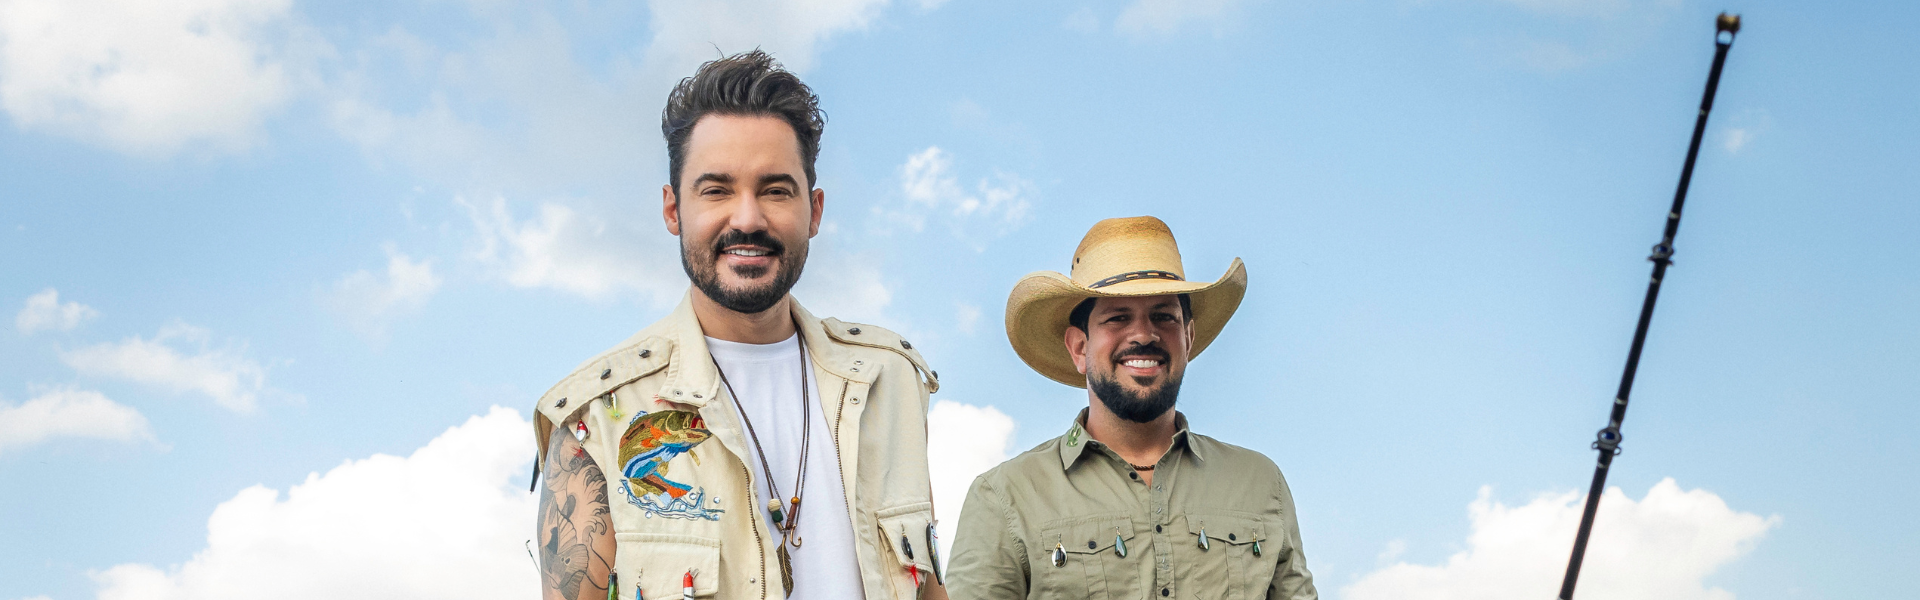 Na pescaria! Fernando & Sorocaba lançam álbum com inspiração na pesca esportiva